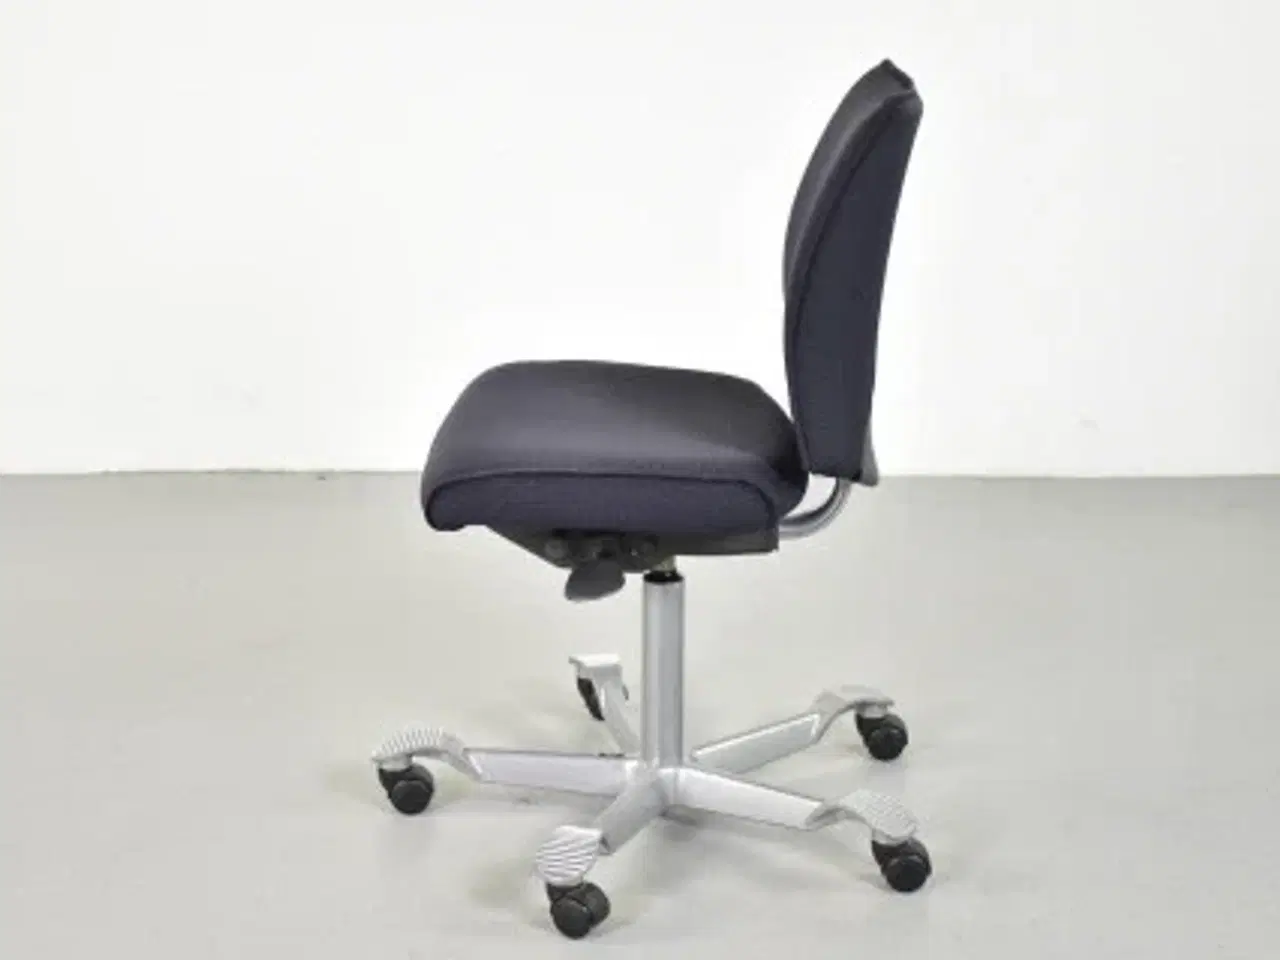 Billede 2 - Häg h05 5200 kontorstol med sort/blå polster og gråt stel